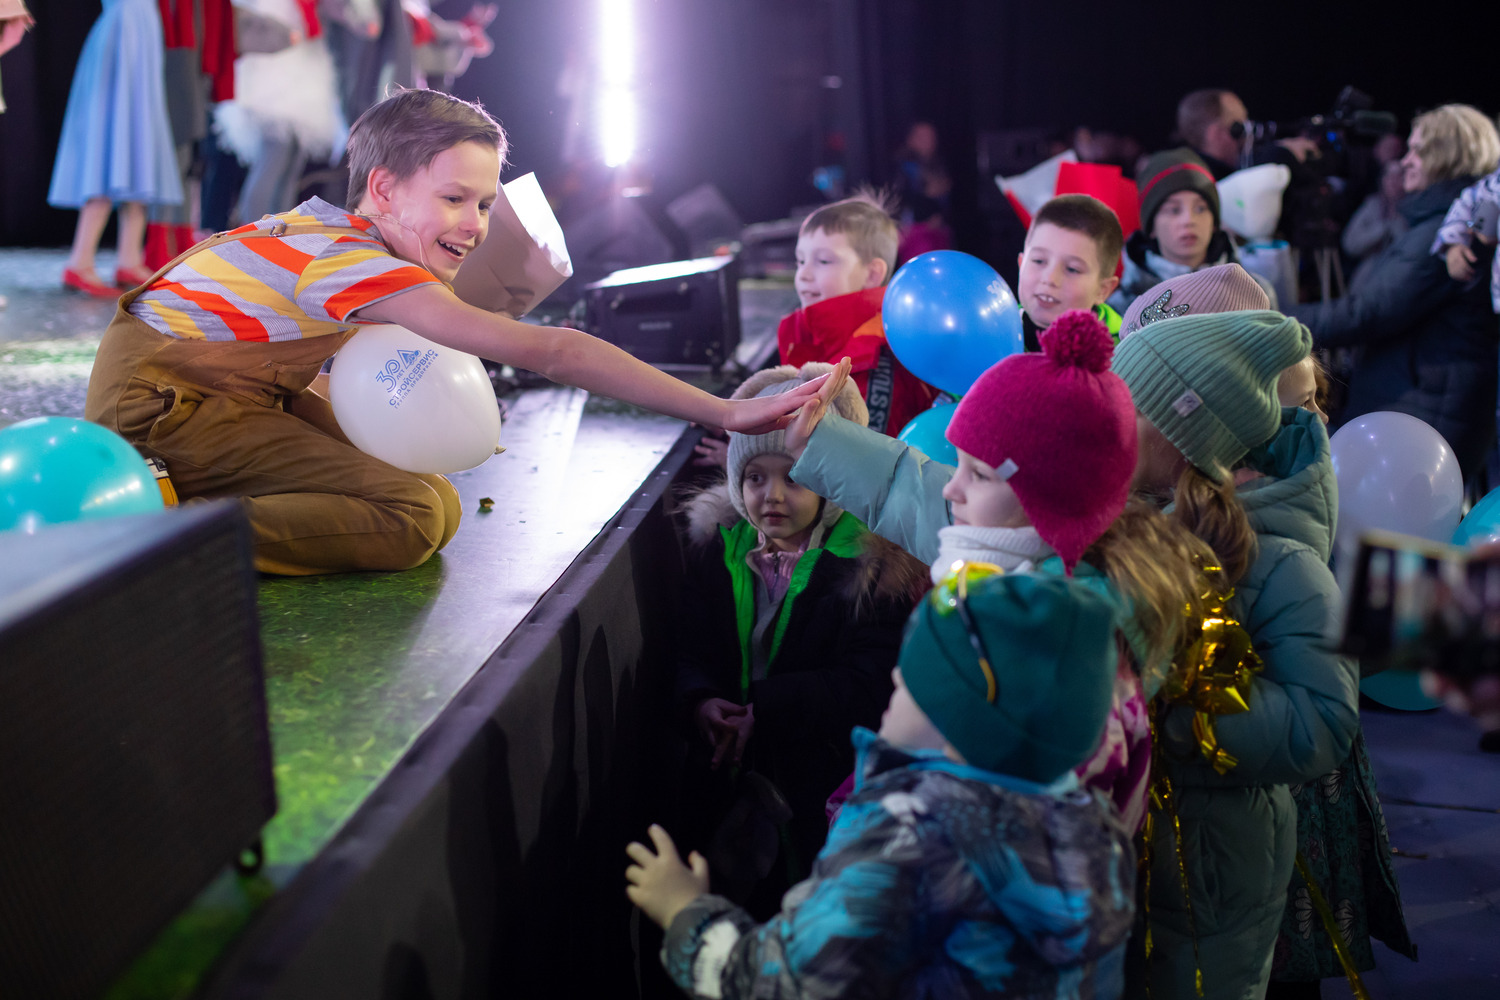 Яркое начало юбилейного года: мюзикл Чебурашка Шоу. Ушастые Елки подарил улыбки 7 тысячам детей сотрудников Стройсервиса. Стройсервис